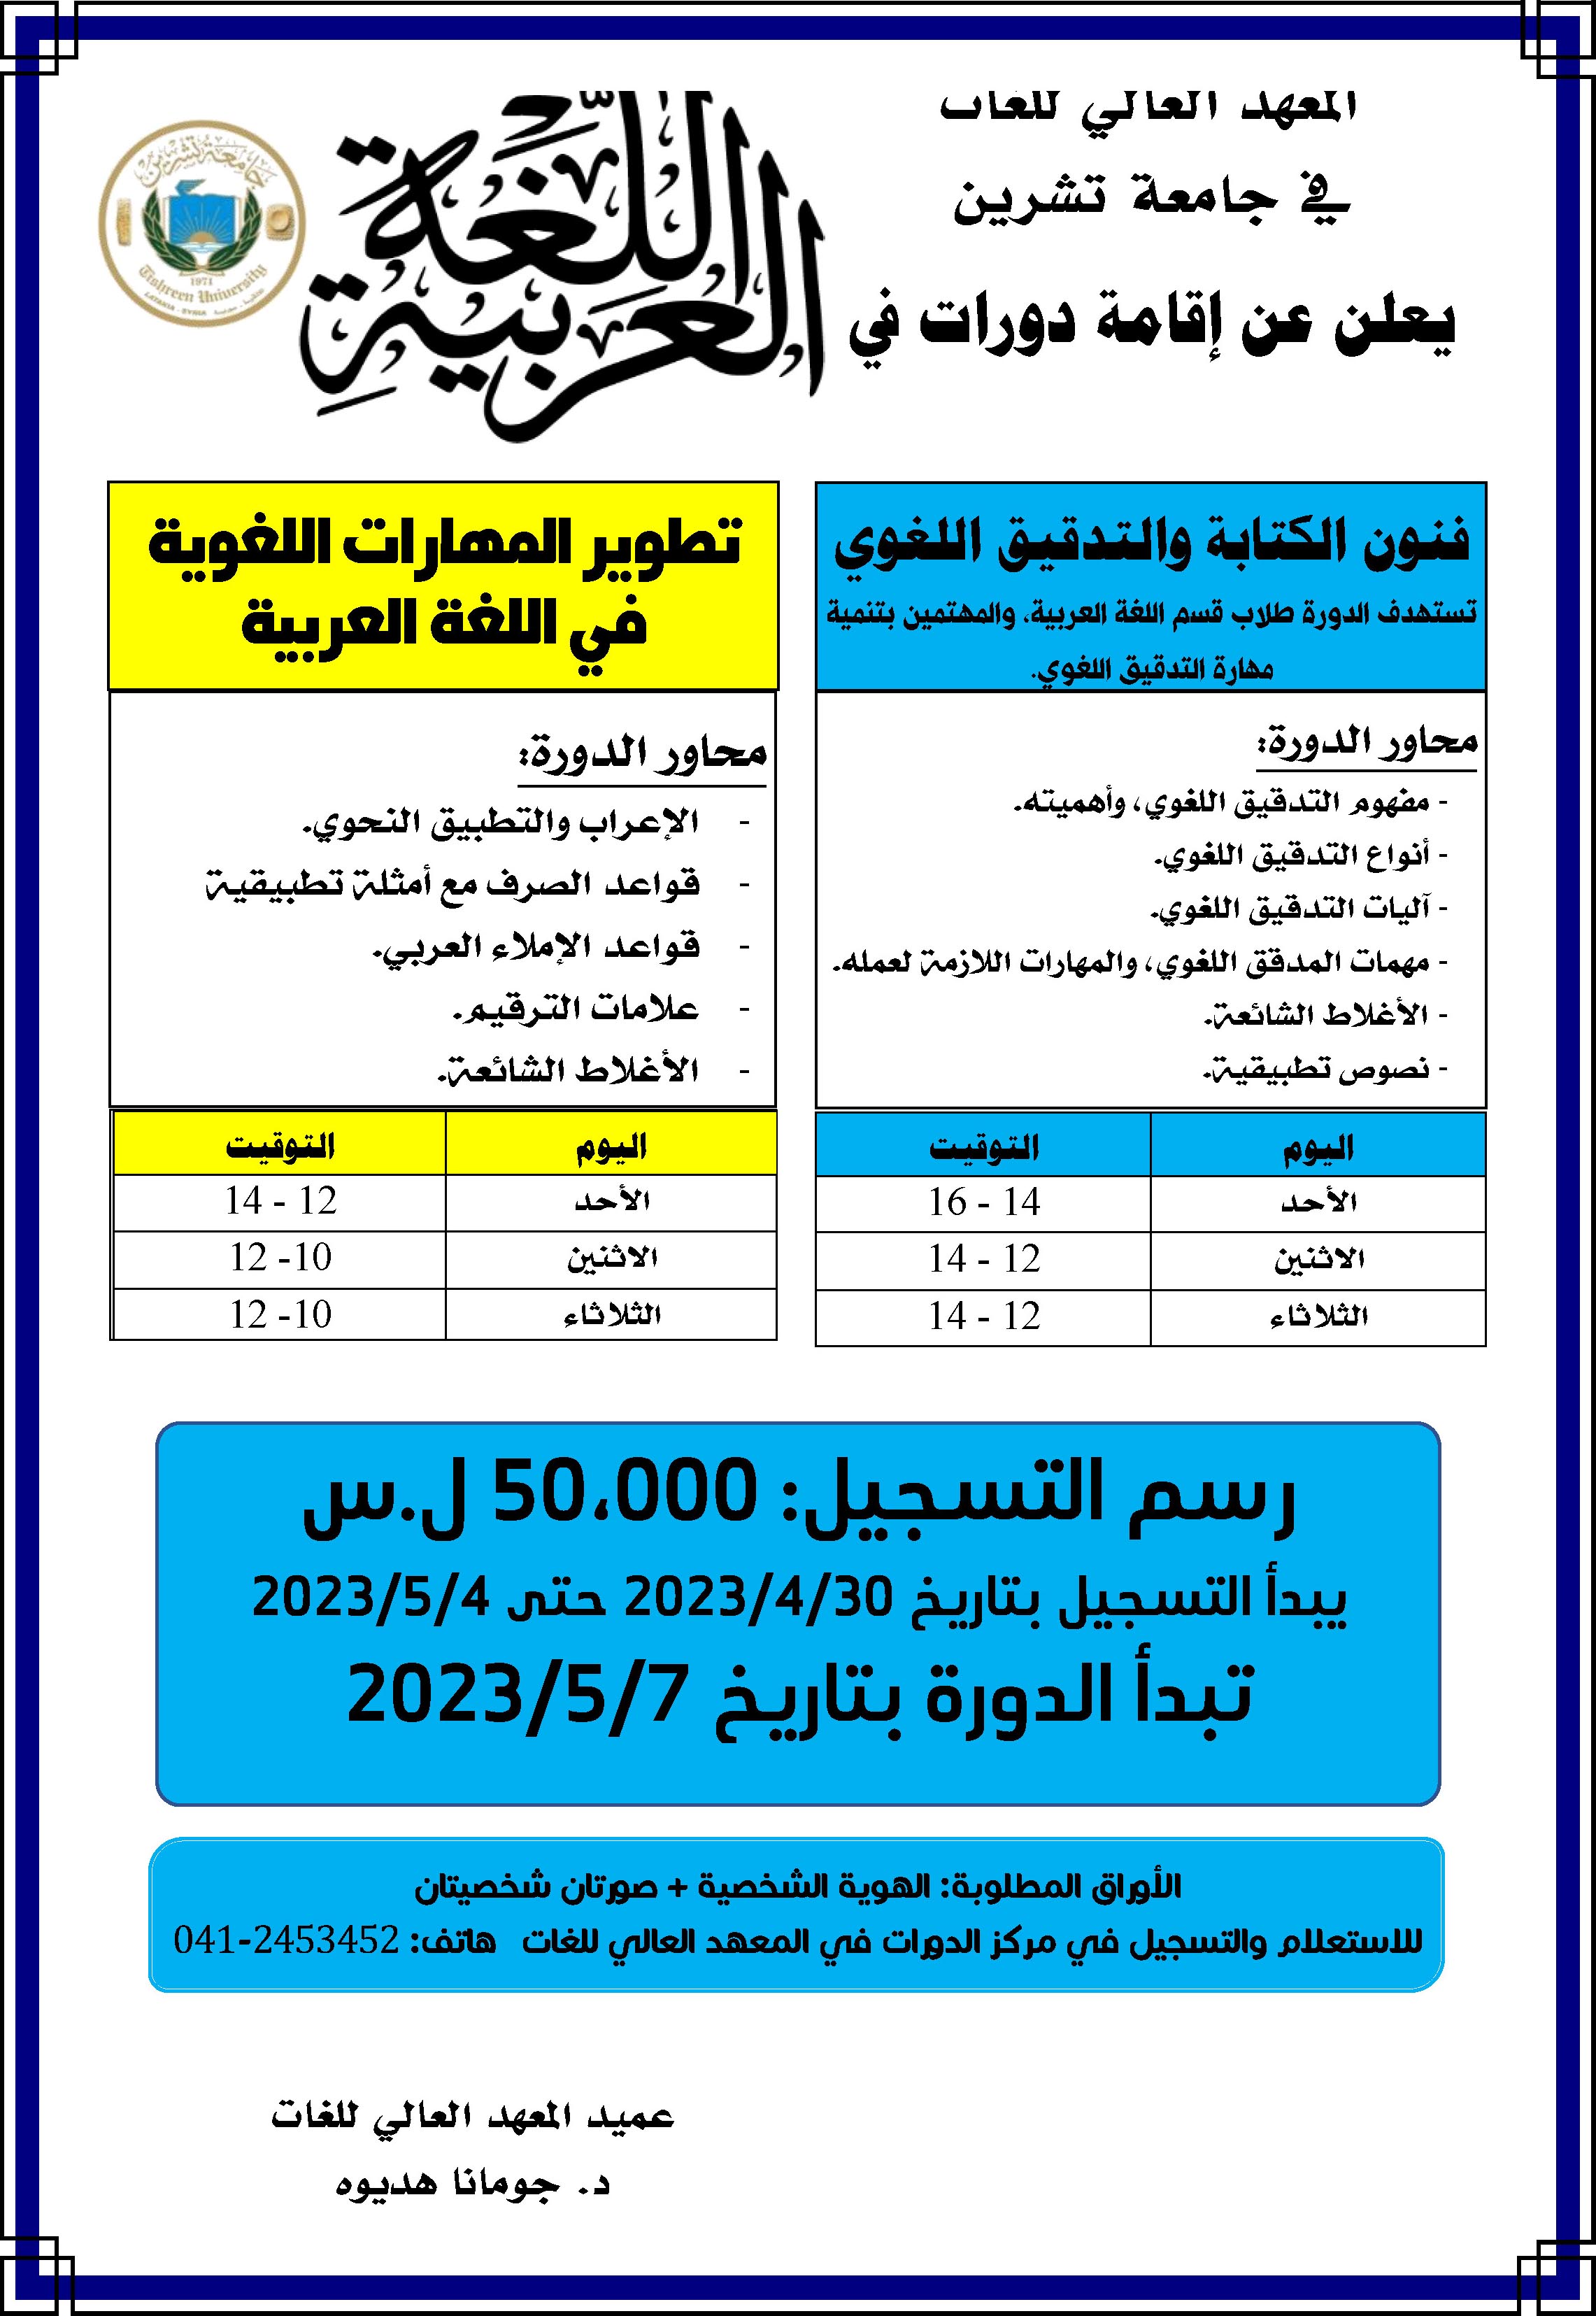 المعهد العالي للغات يعلن إقامة دورات في اللغة العربية تبدء بتاريخ 7-5-2023